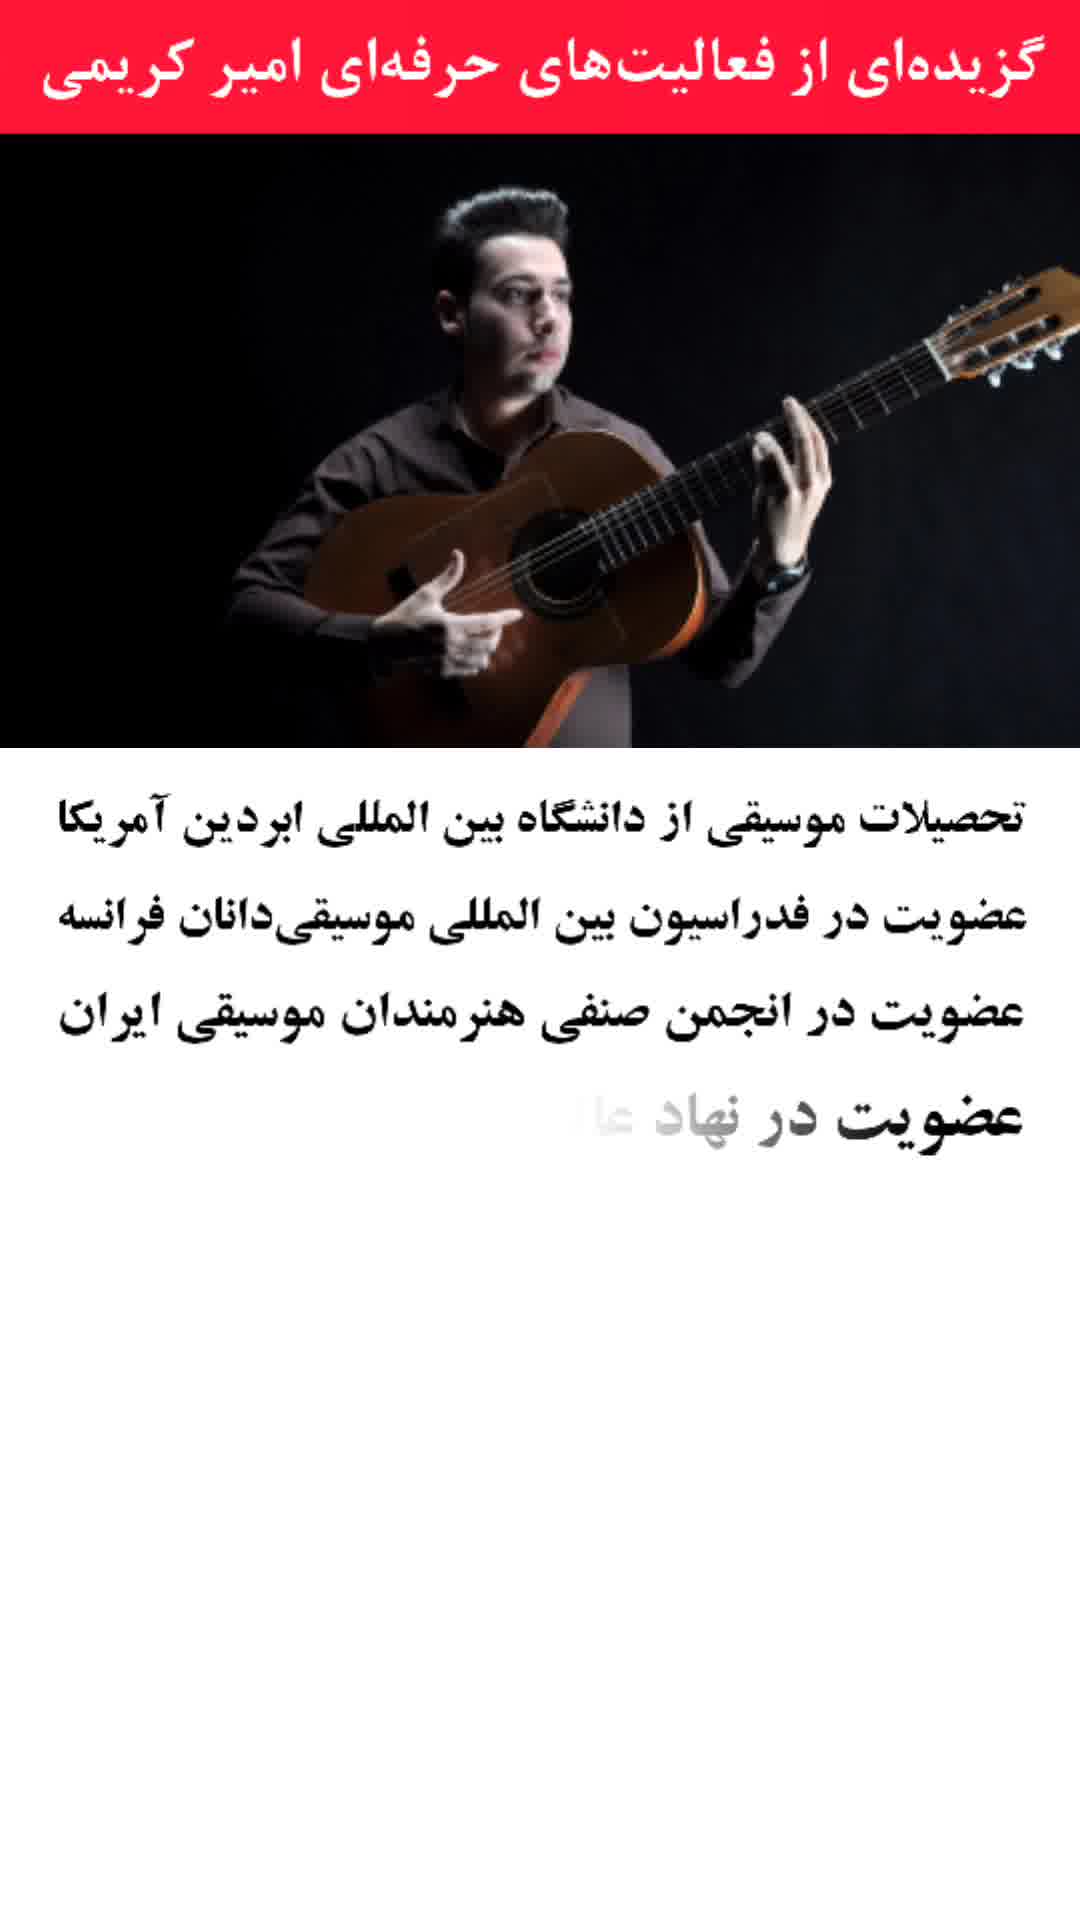 بهترین استاد گیتار تهران- گزیده فعالیت ها